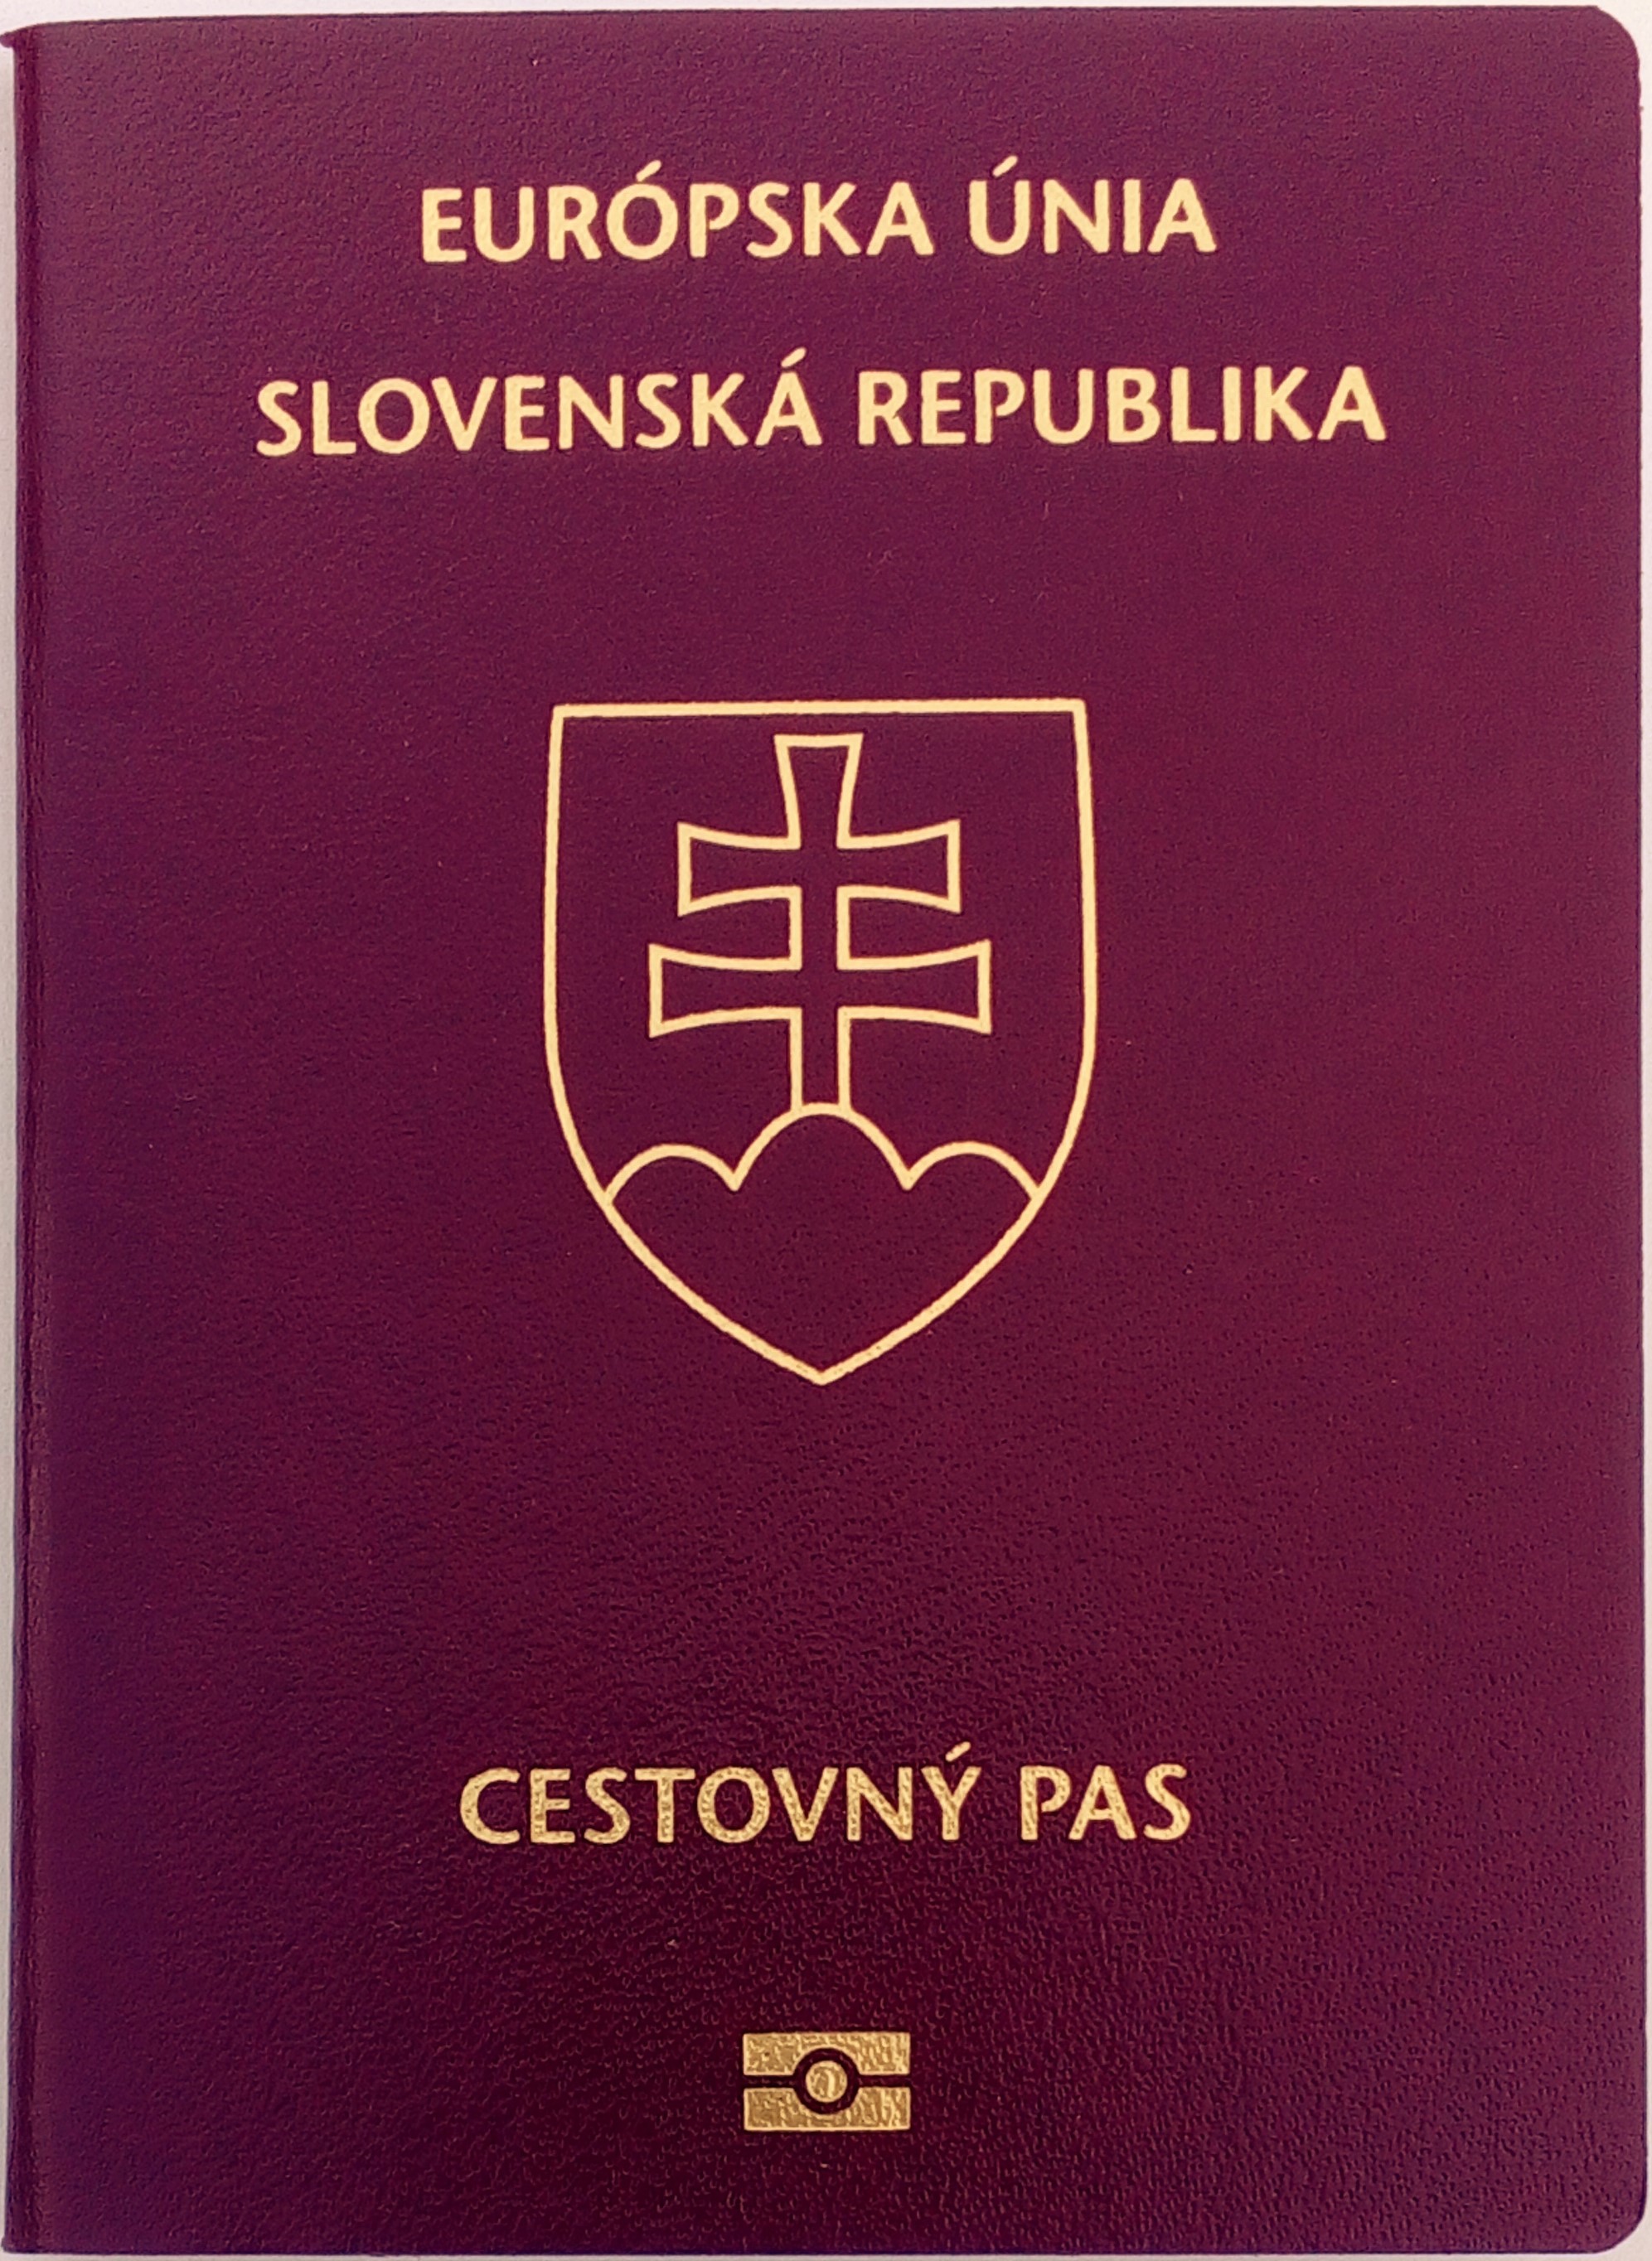 Certified translation Slovak